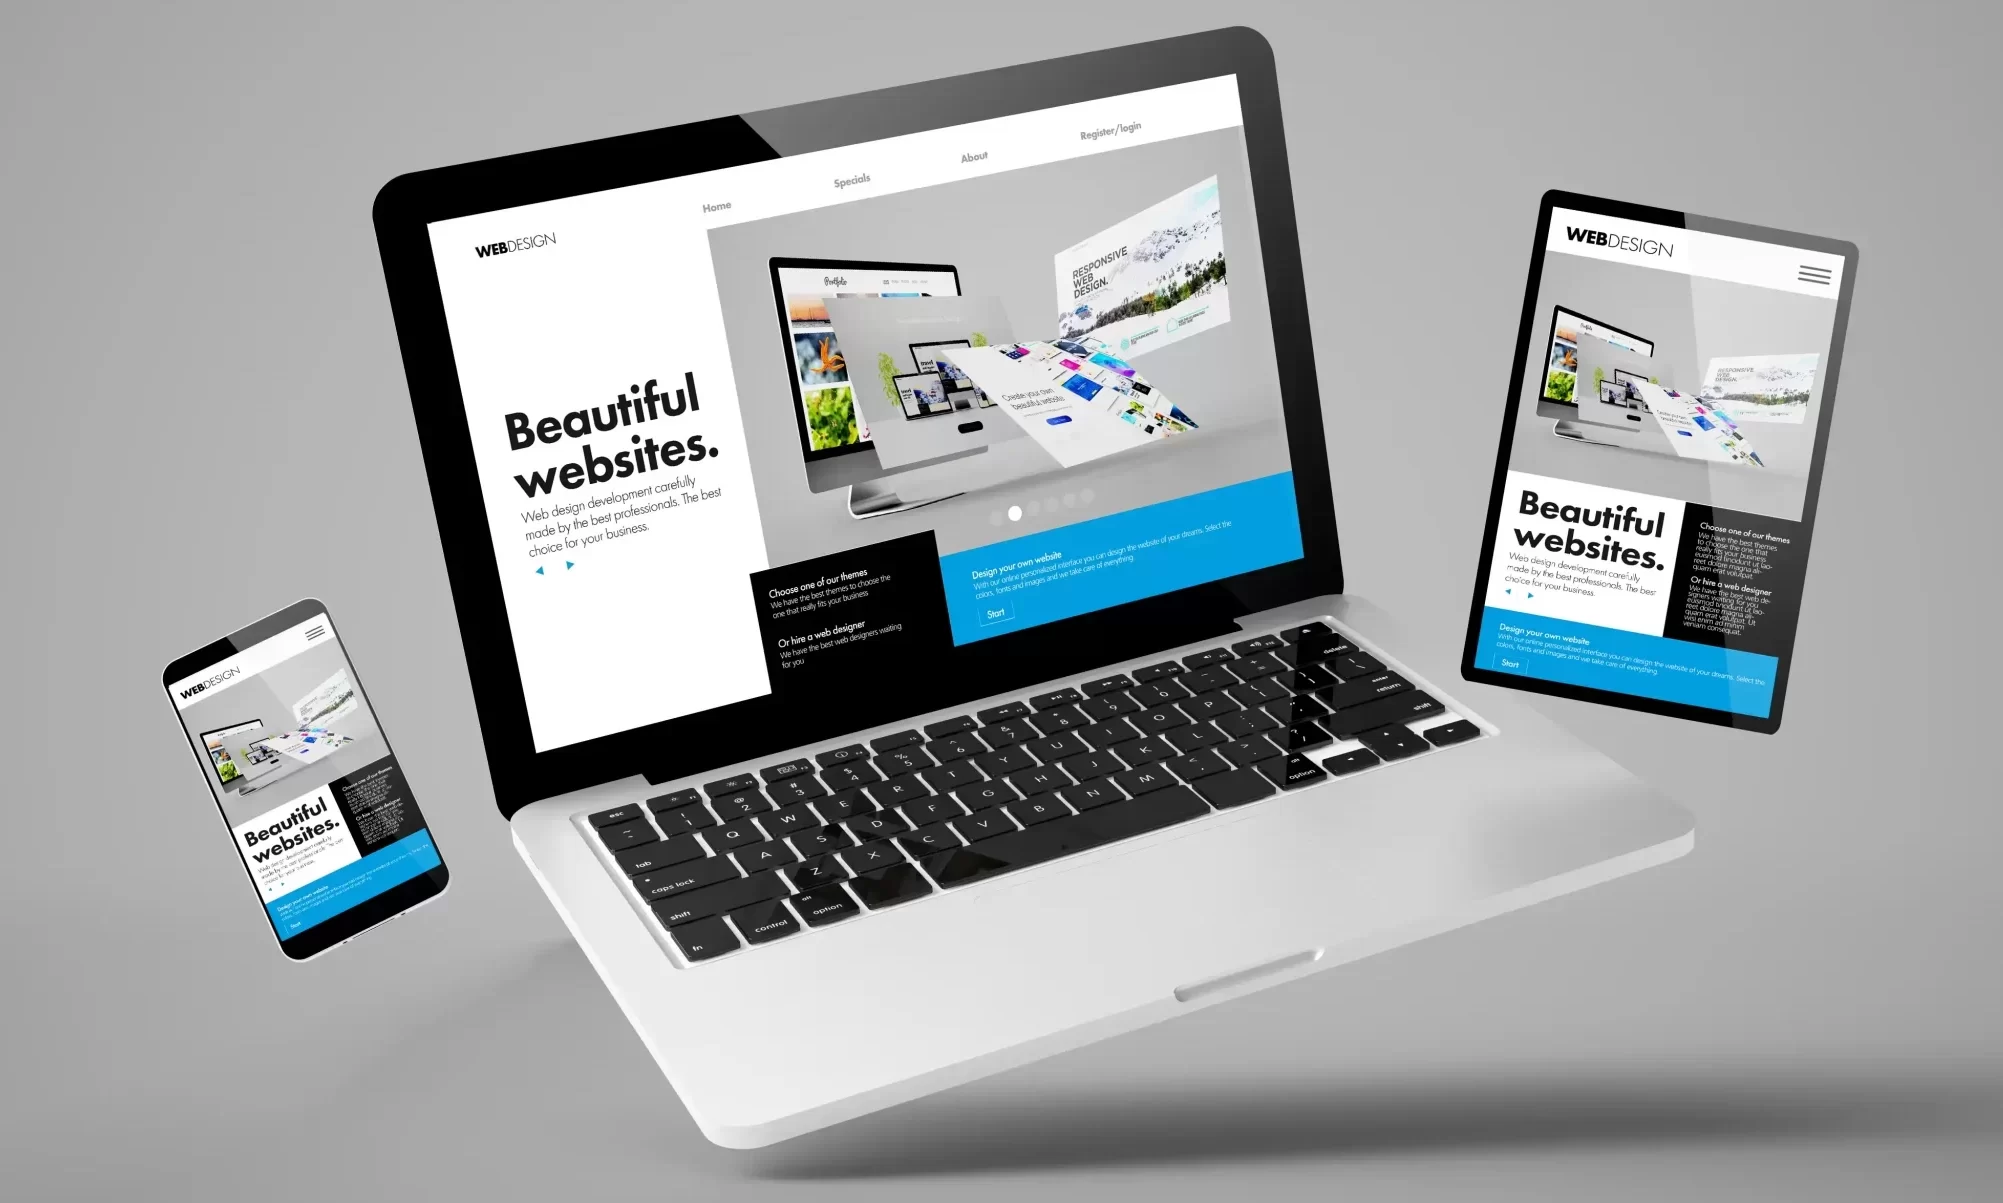 flying-laptop-mobile-tablet-3d-rendering-showing-builder-website-responsive-web-design